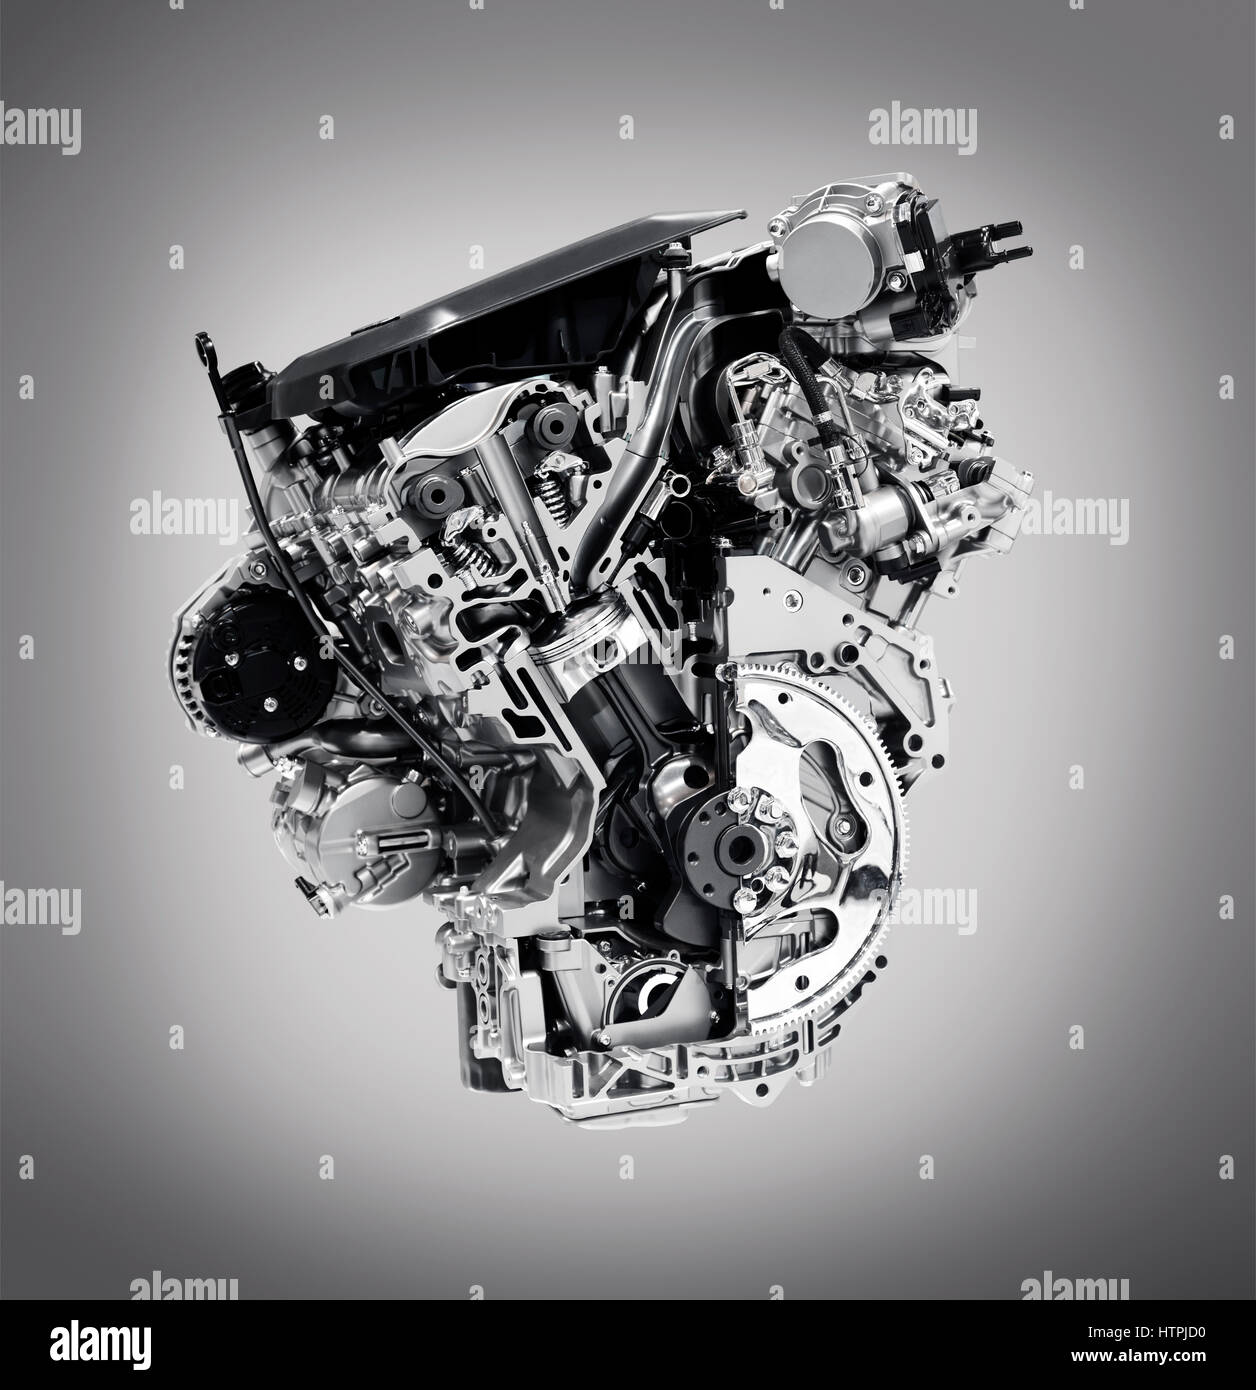 Führerschein erhältlich unter MaximImages.com – Querschnitt des 2017-Motors Buick Lacrosse 3,6L V6 VVT DI 310hp mit Zylinder, Kolben und Ventilen Stockfoto